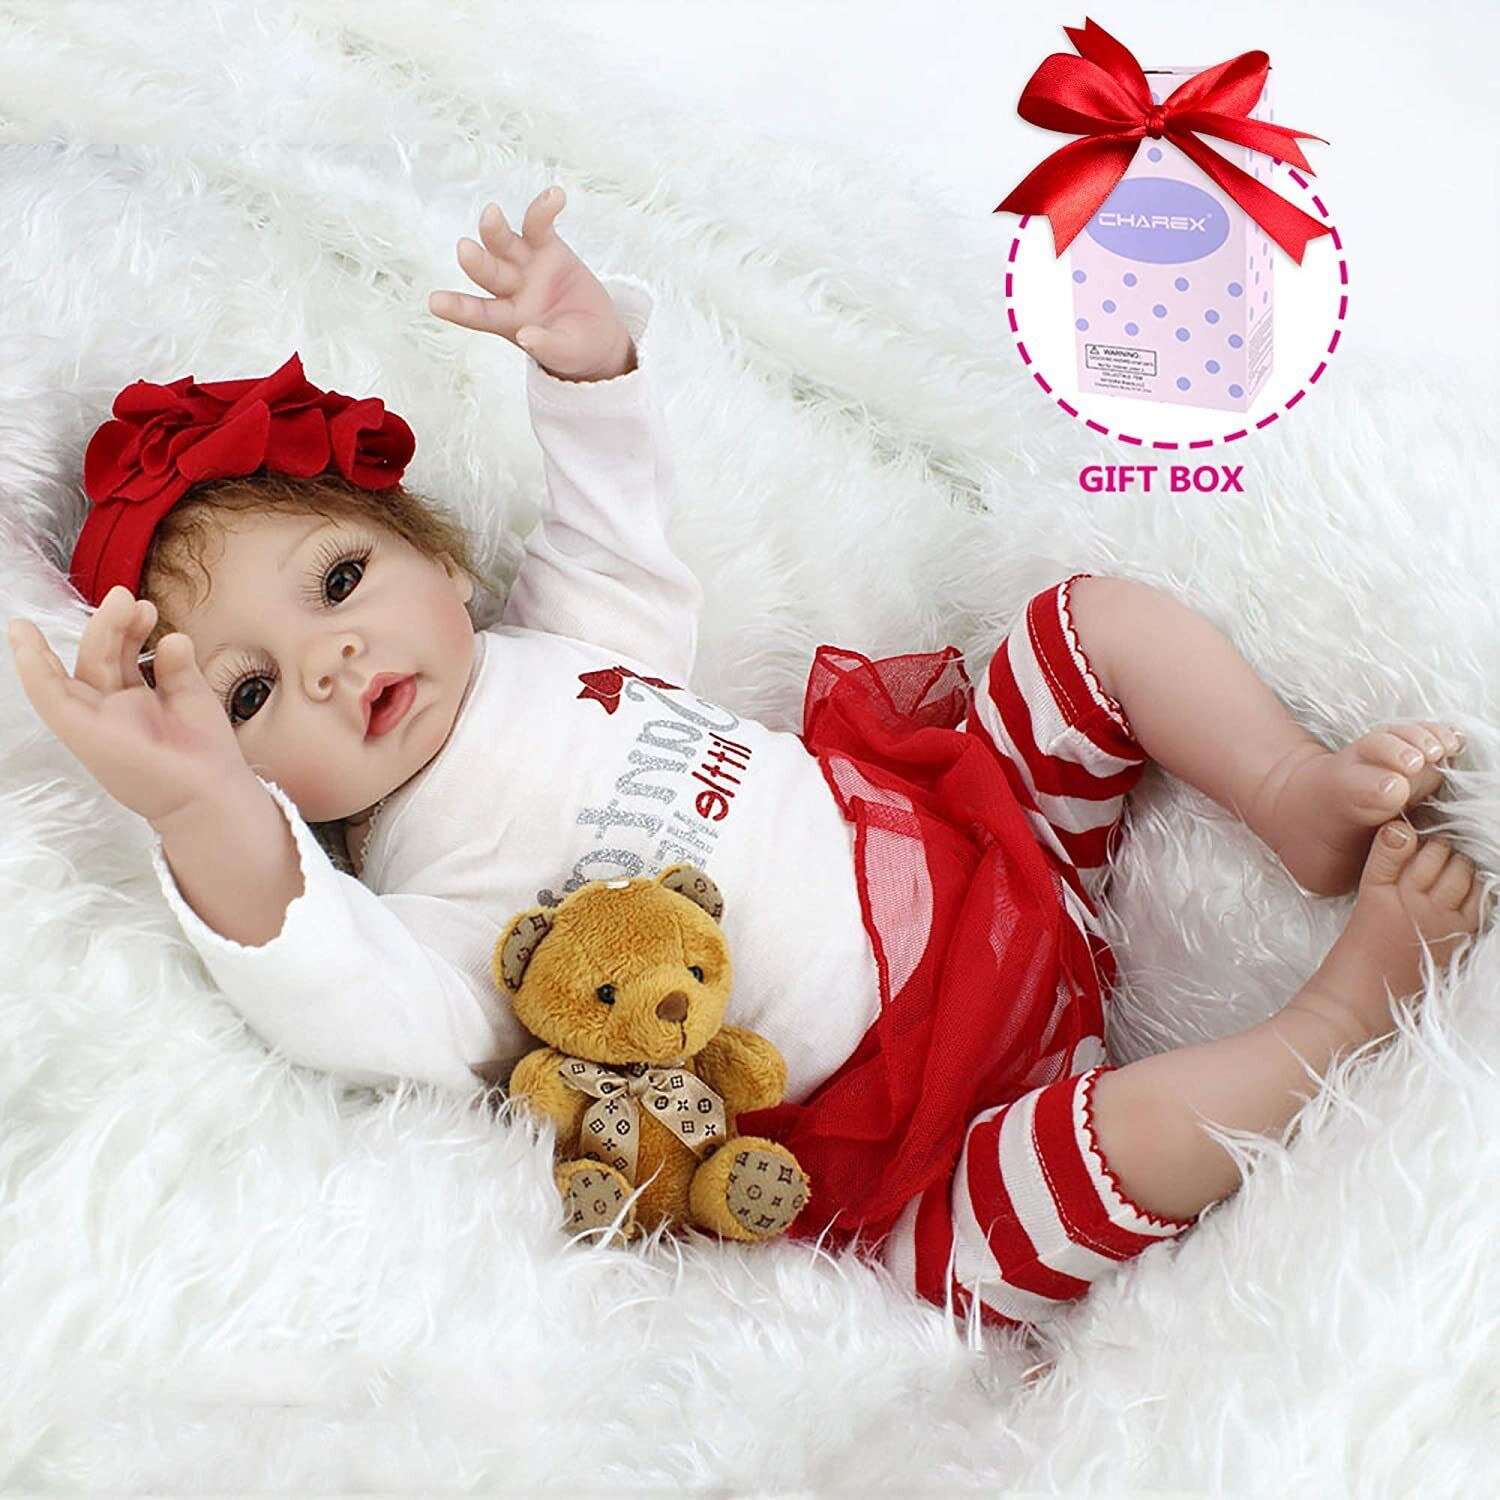 22" Handmade Reborn Baby Dolls Gift Soft Vinyl Silicone Lifelike Girl Doll Toys Kaydora